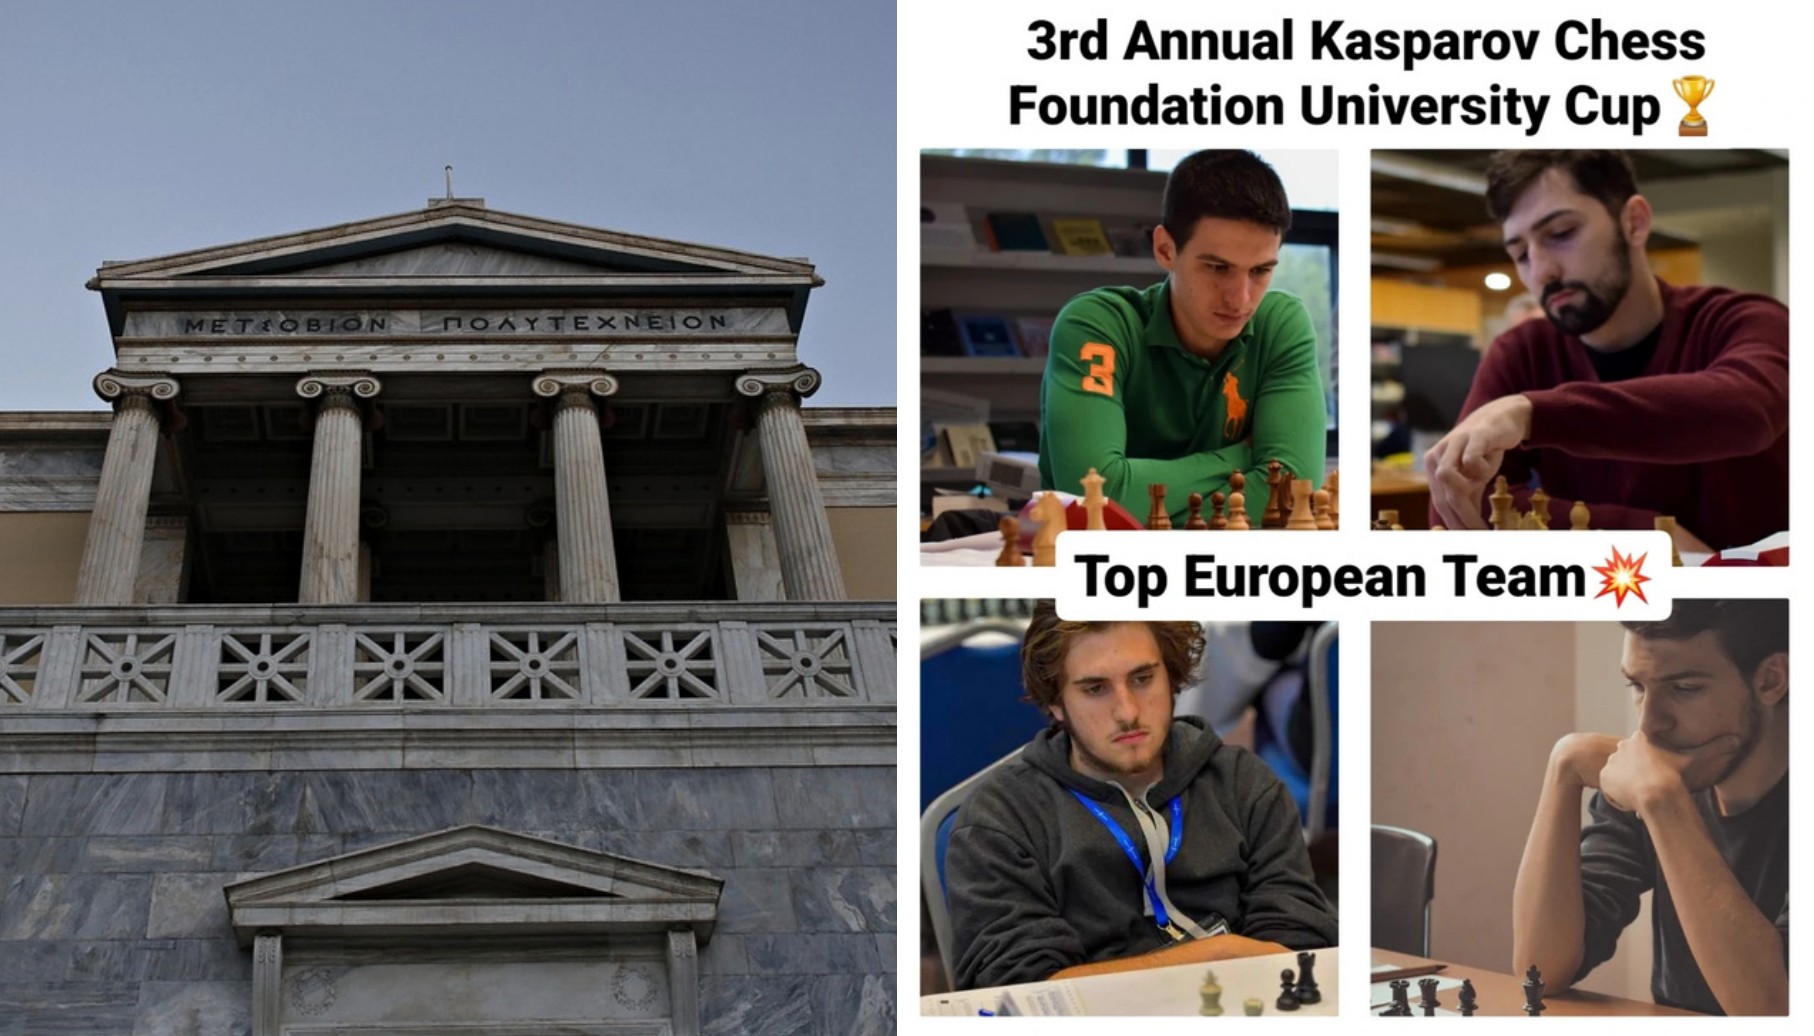  Πρώτη στην Ευρώπη και πέμπτη στον κόσμο η Σκακιστική Ομάδα του ΕΜΠ Le Roi